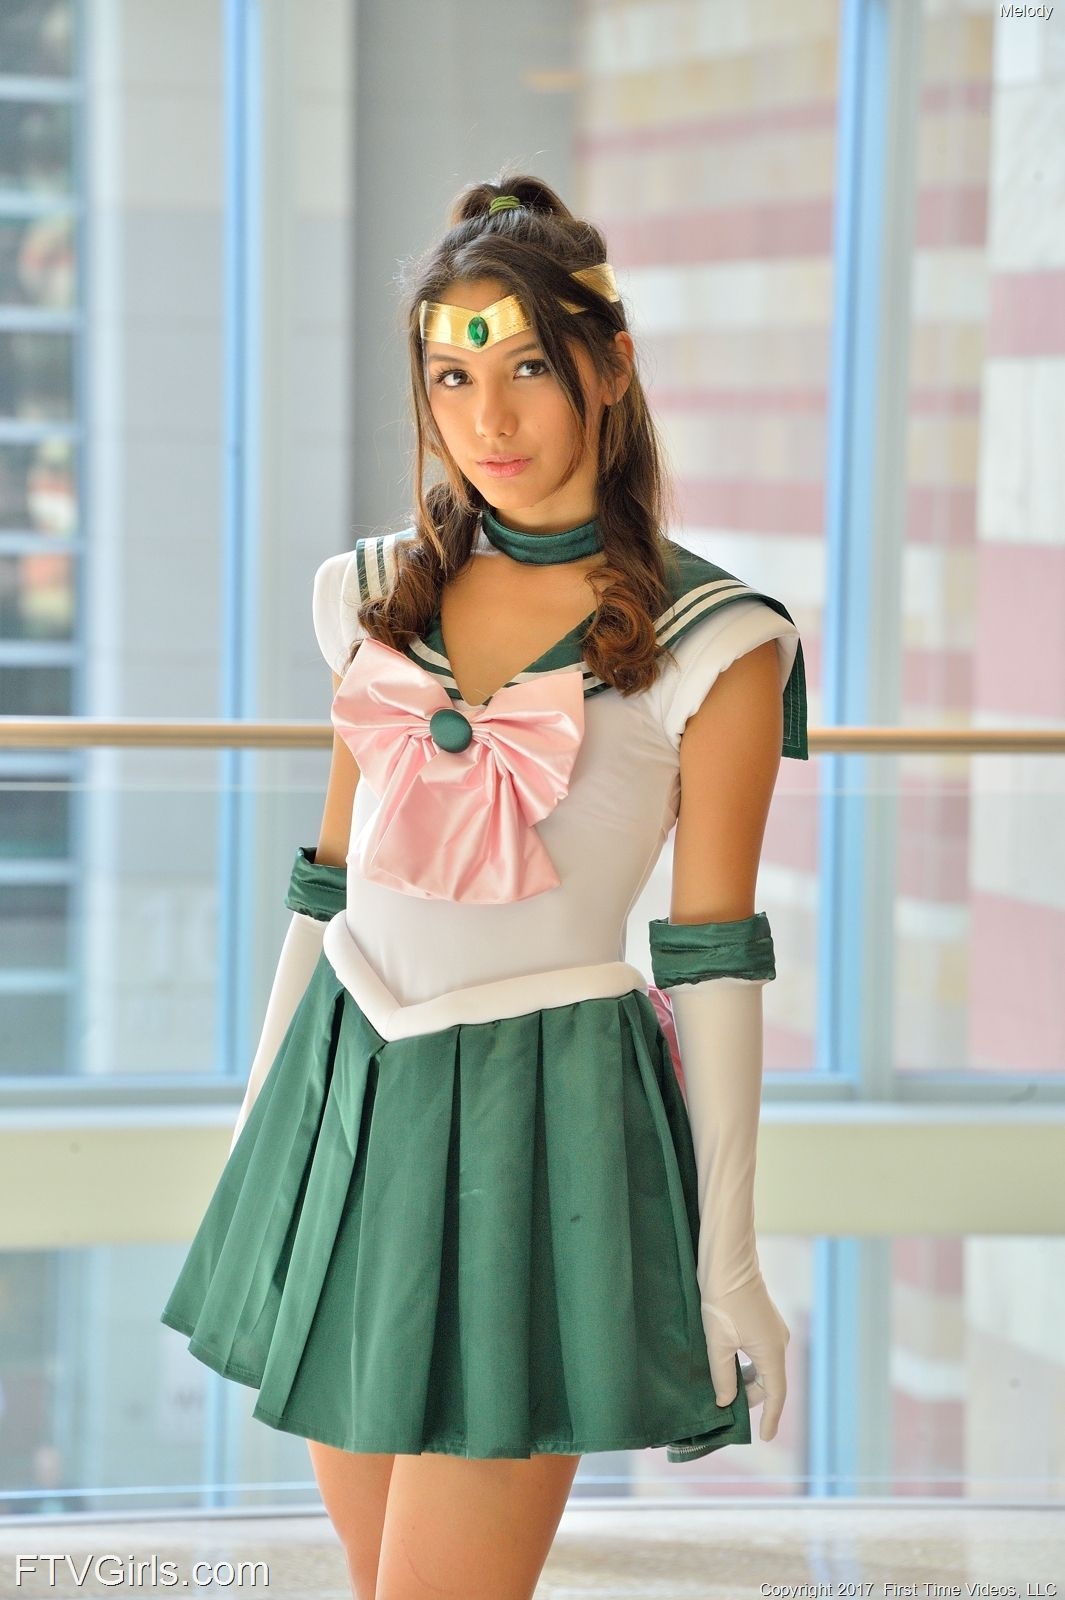 Melody Wylde as Sailor Jupiter 60